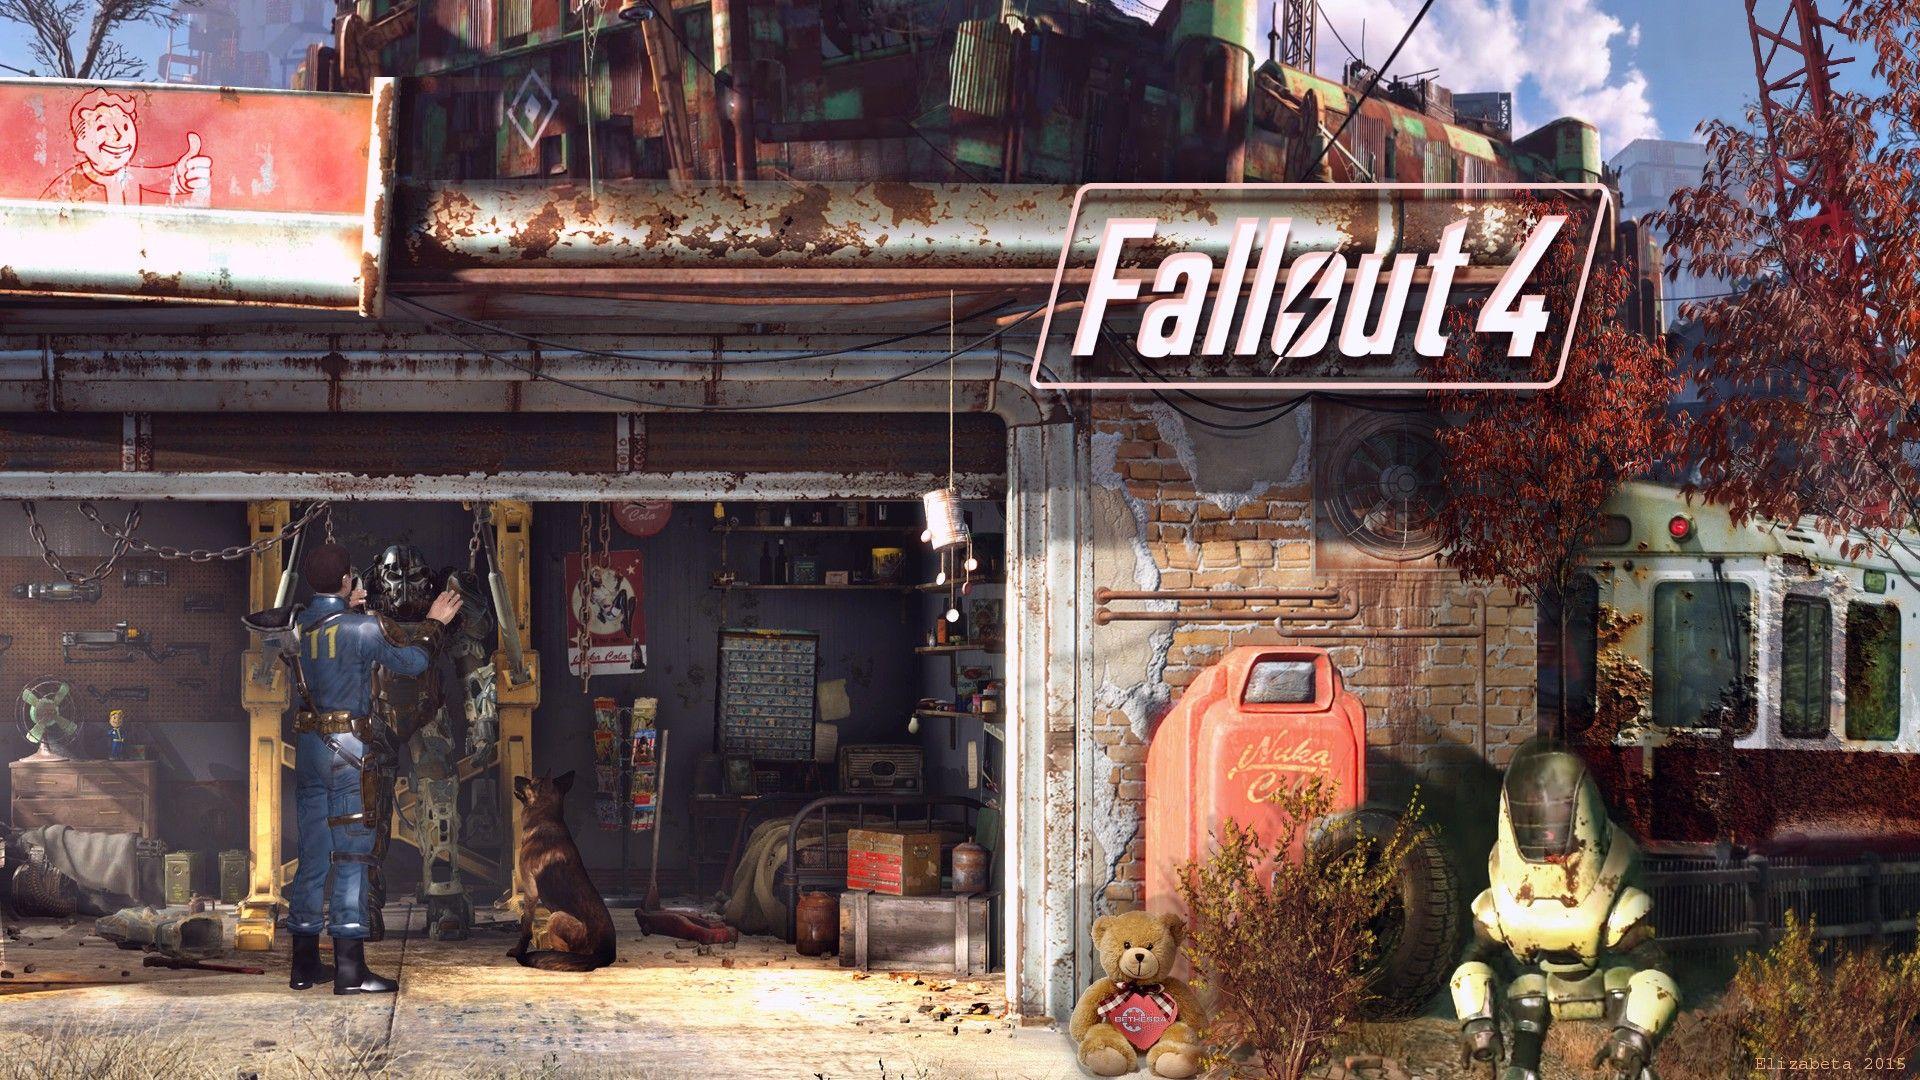 Fallout 4 wallpaper HD.com